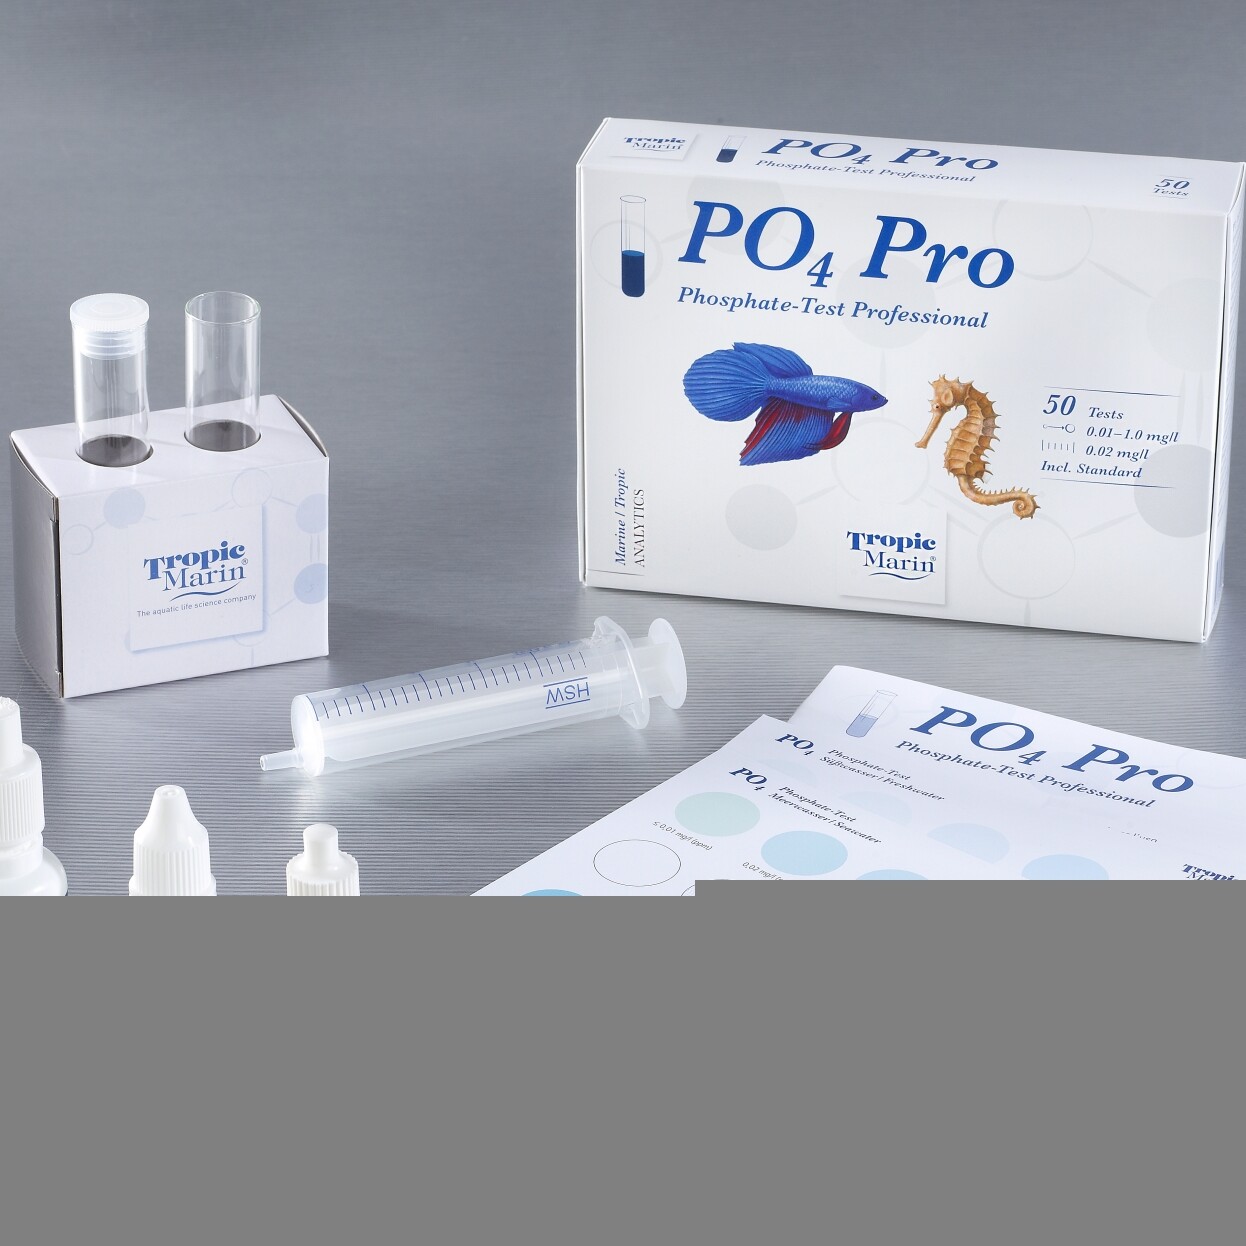 Tropic Marin® , тест для воды PO4 PRO (фосфат, профессиональный), для Аквариумов и Океанариумов, (Германия)